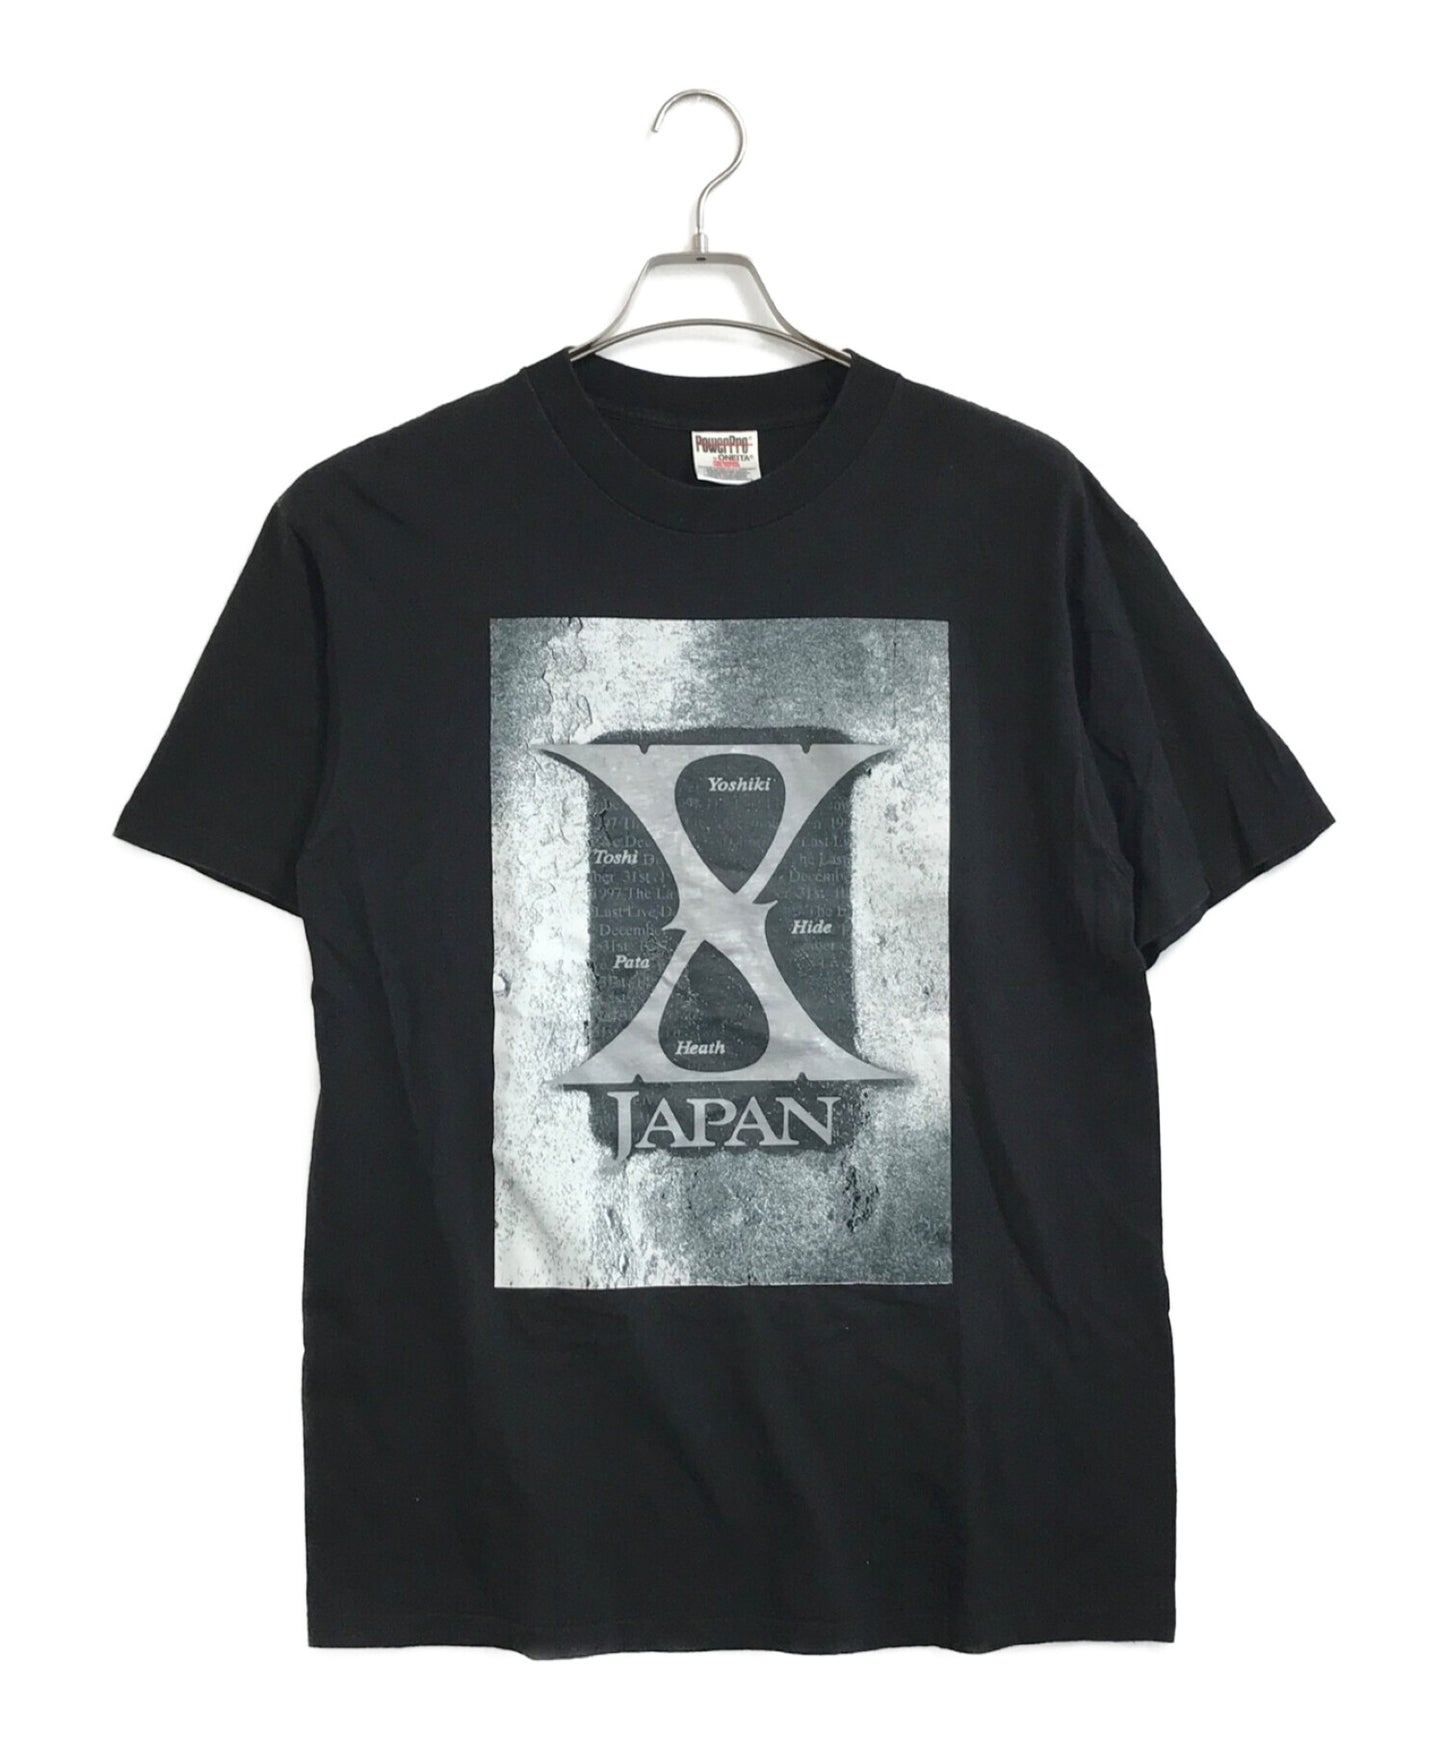 เสื้อยืดวงดนตรีของ X Japan 97